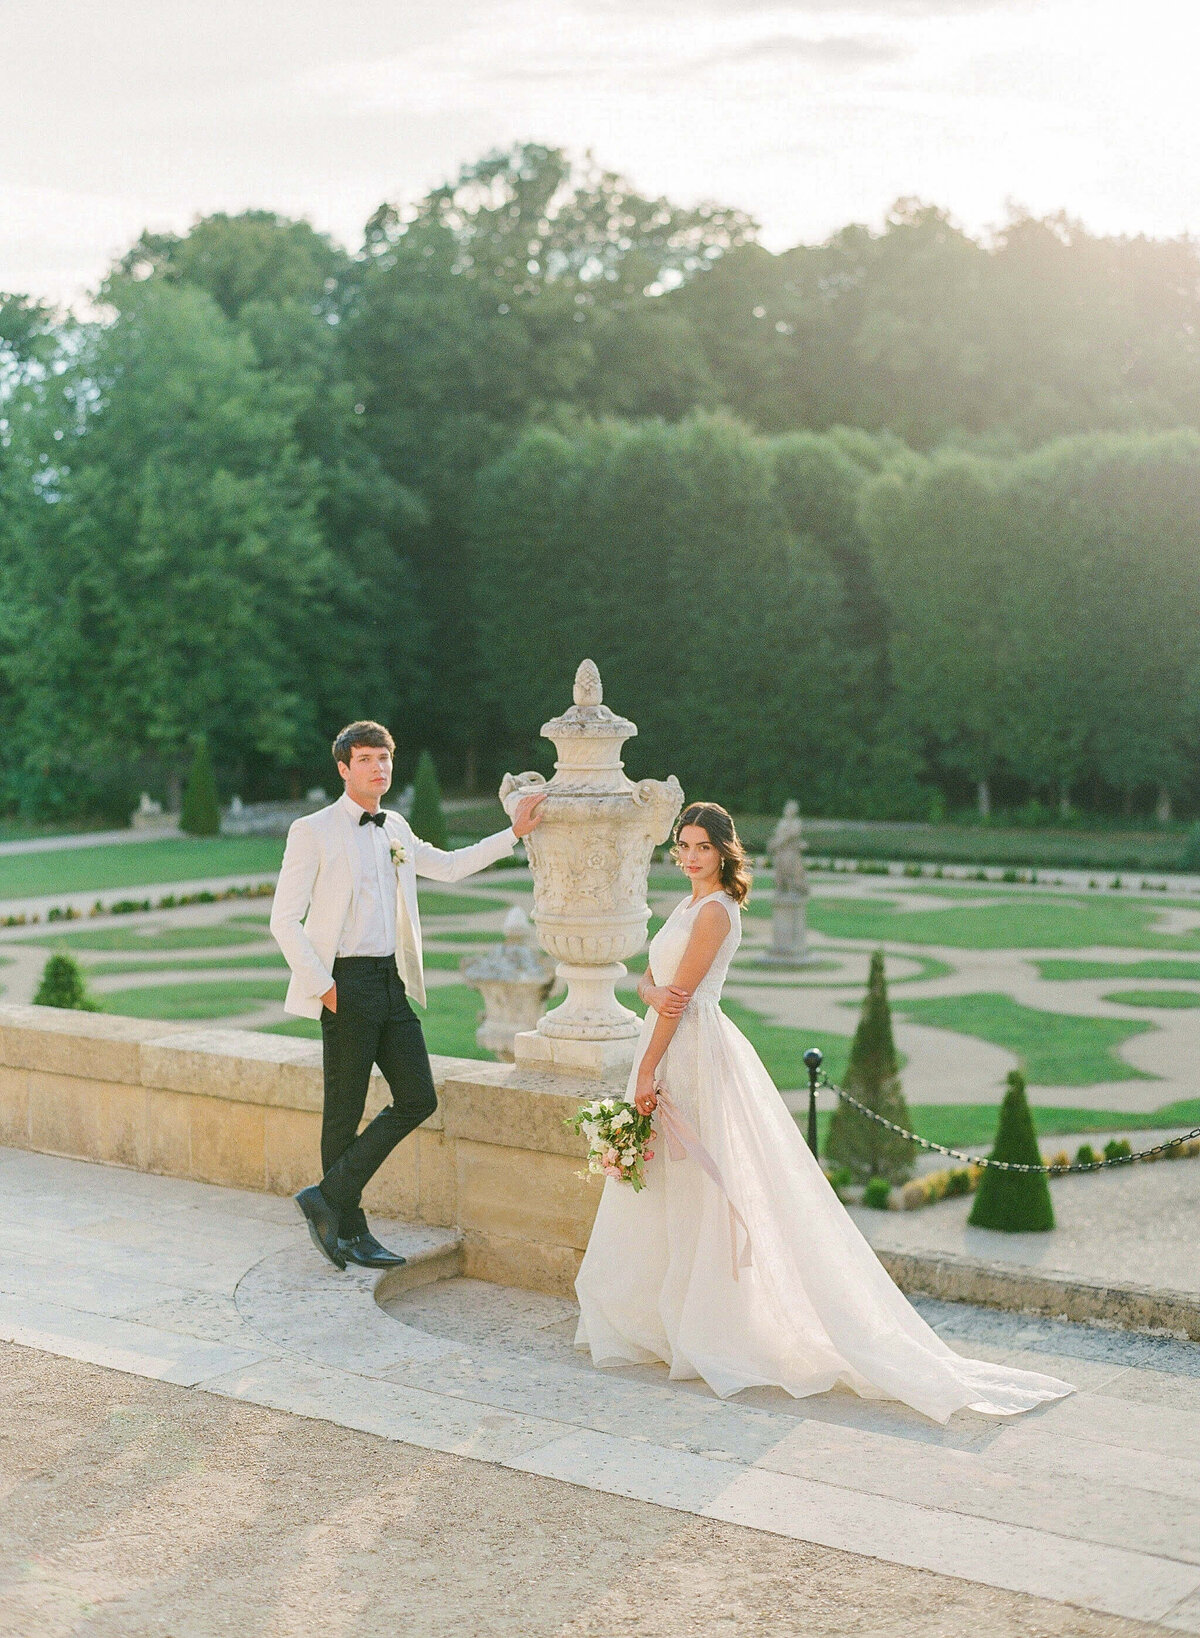 Chateau-de-Villette-wedding-florist-Floraison54